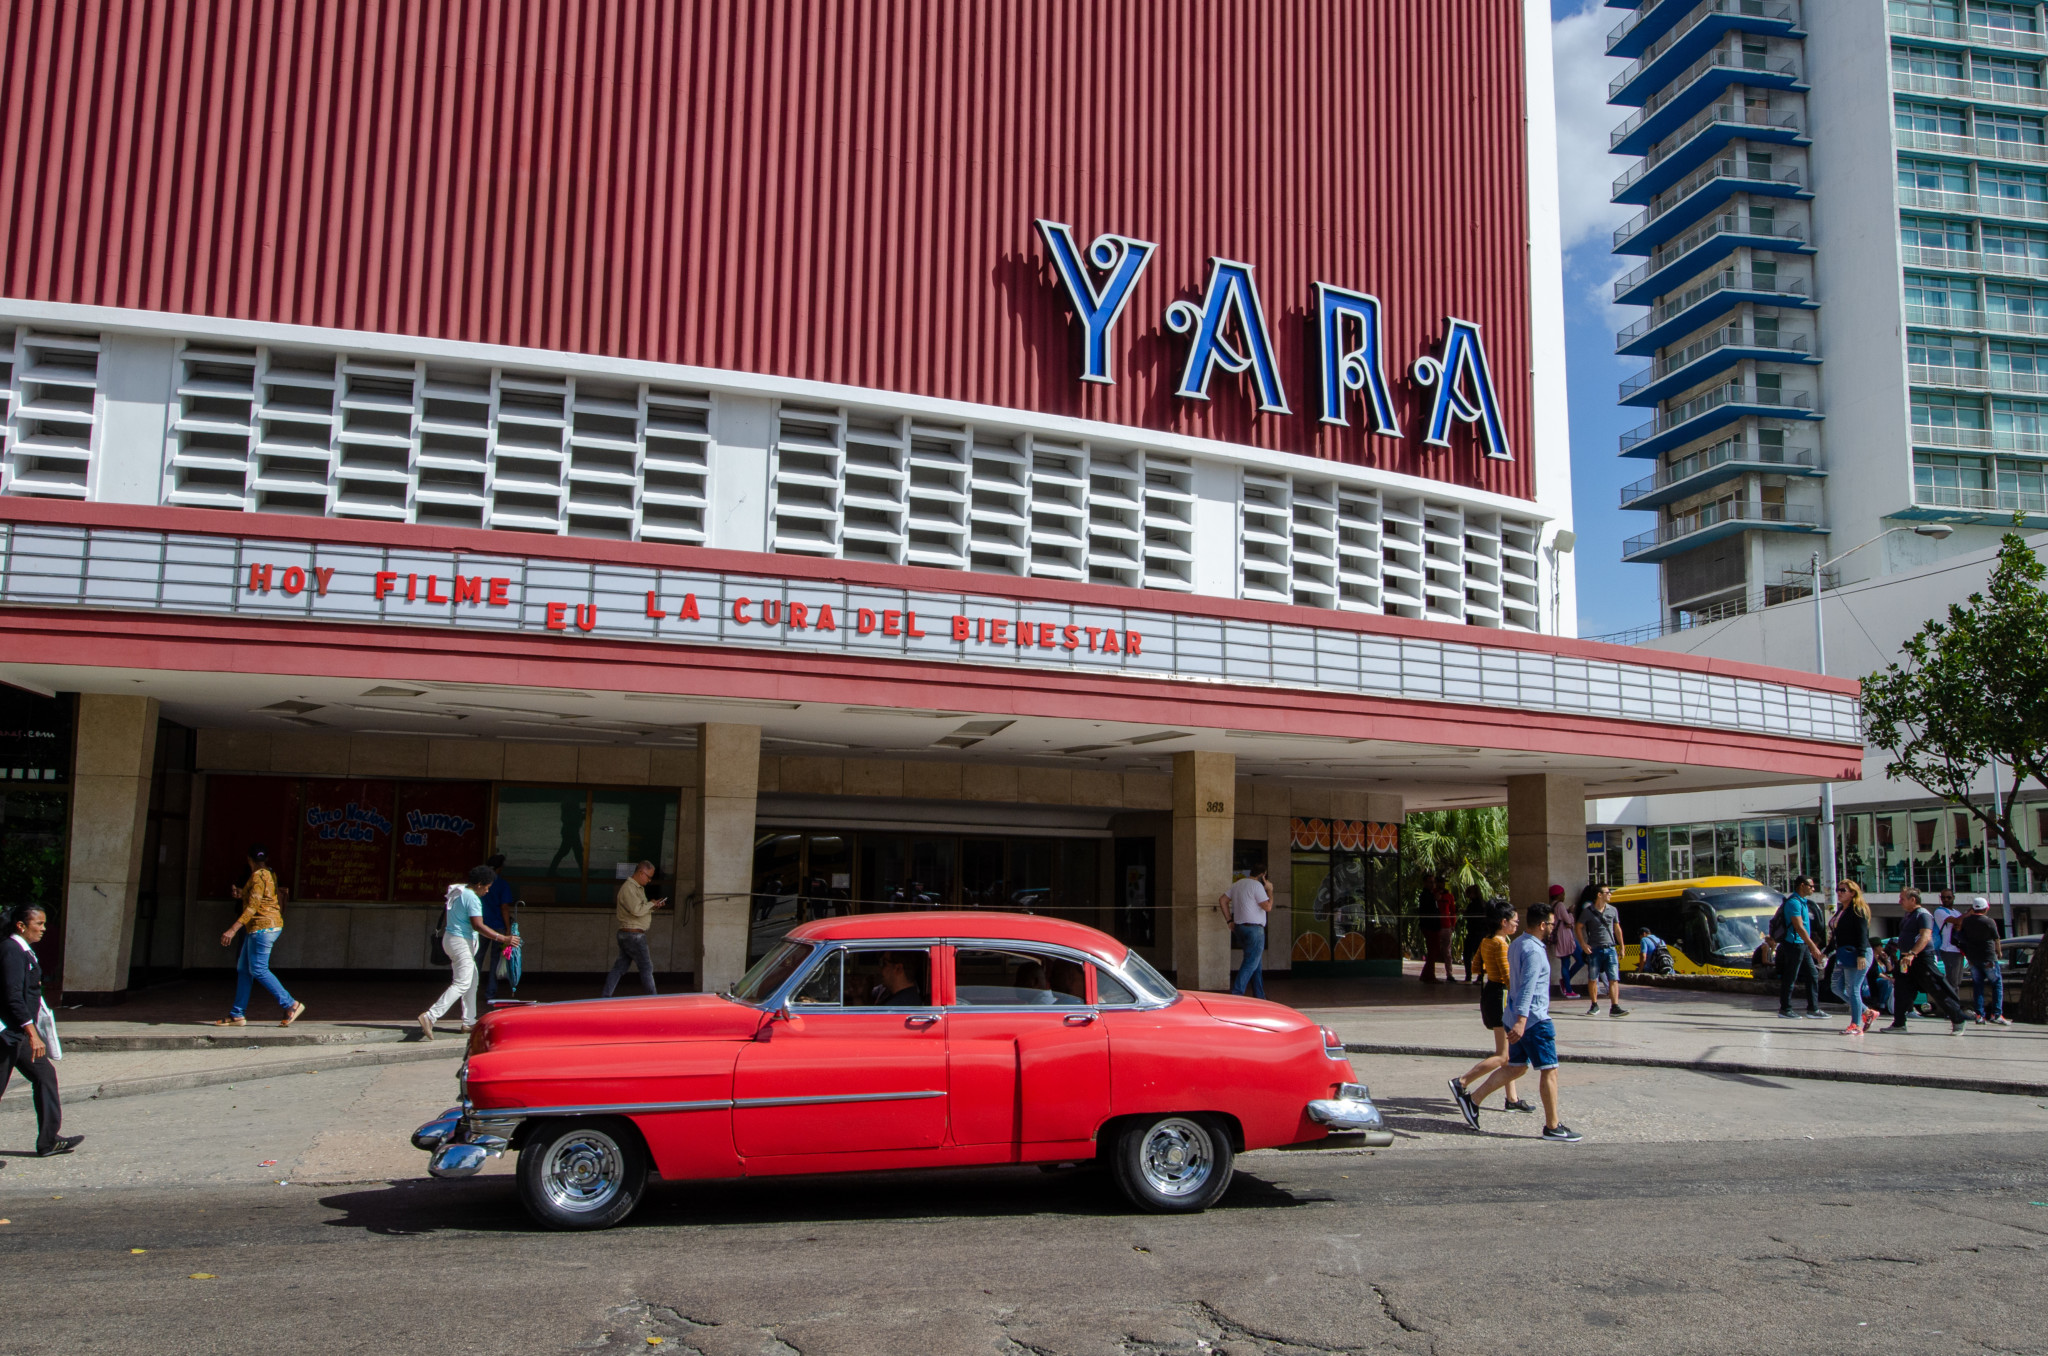 Das Cine Yara in Vedado ist ein Highlight in Havanna